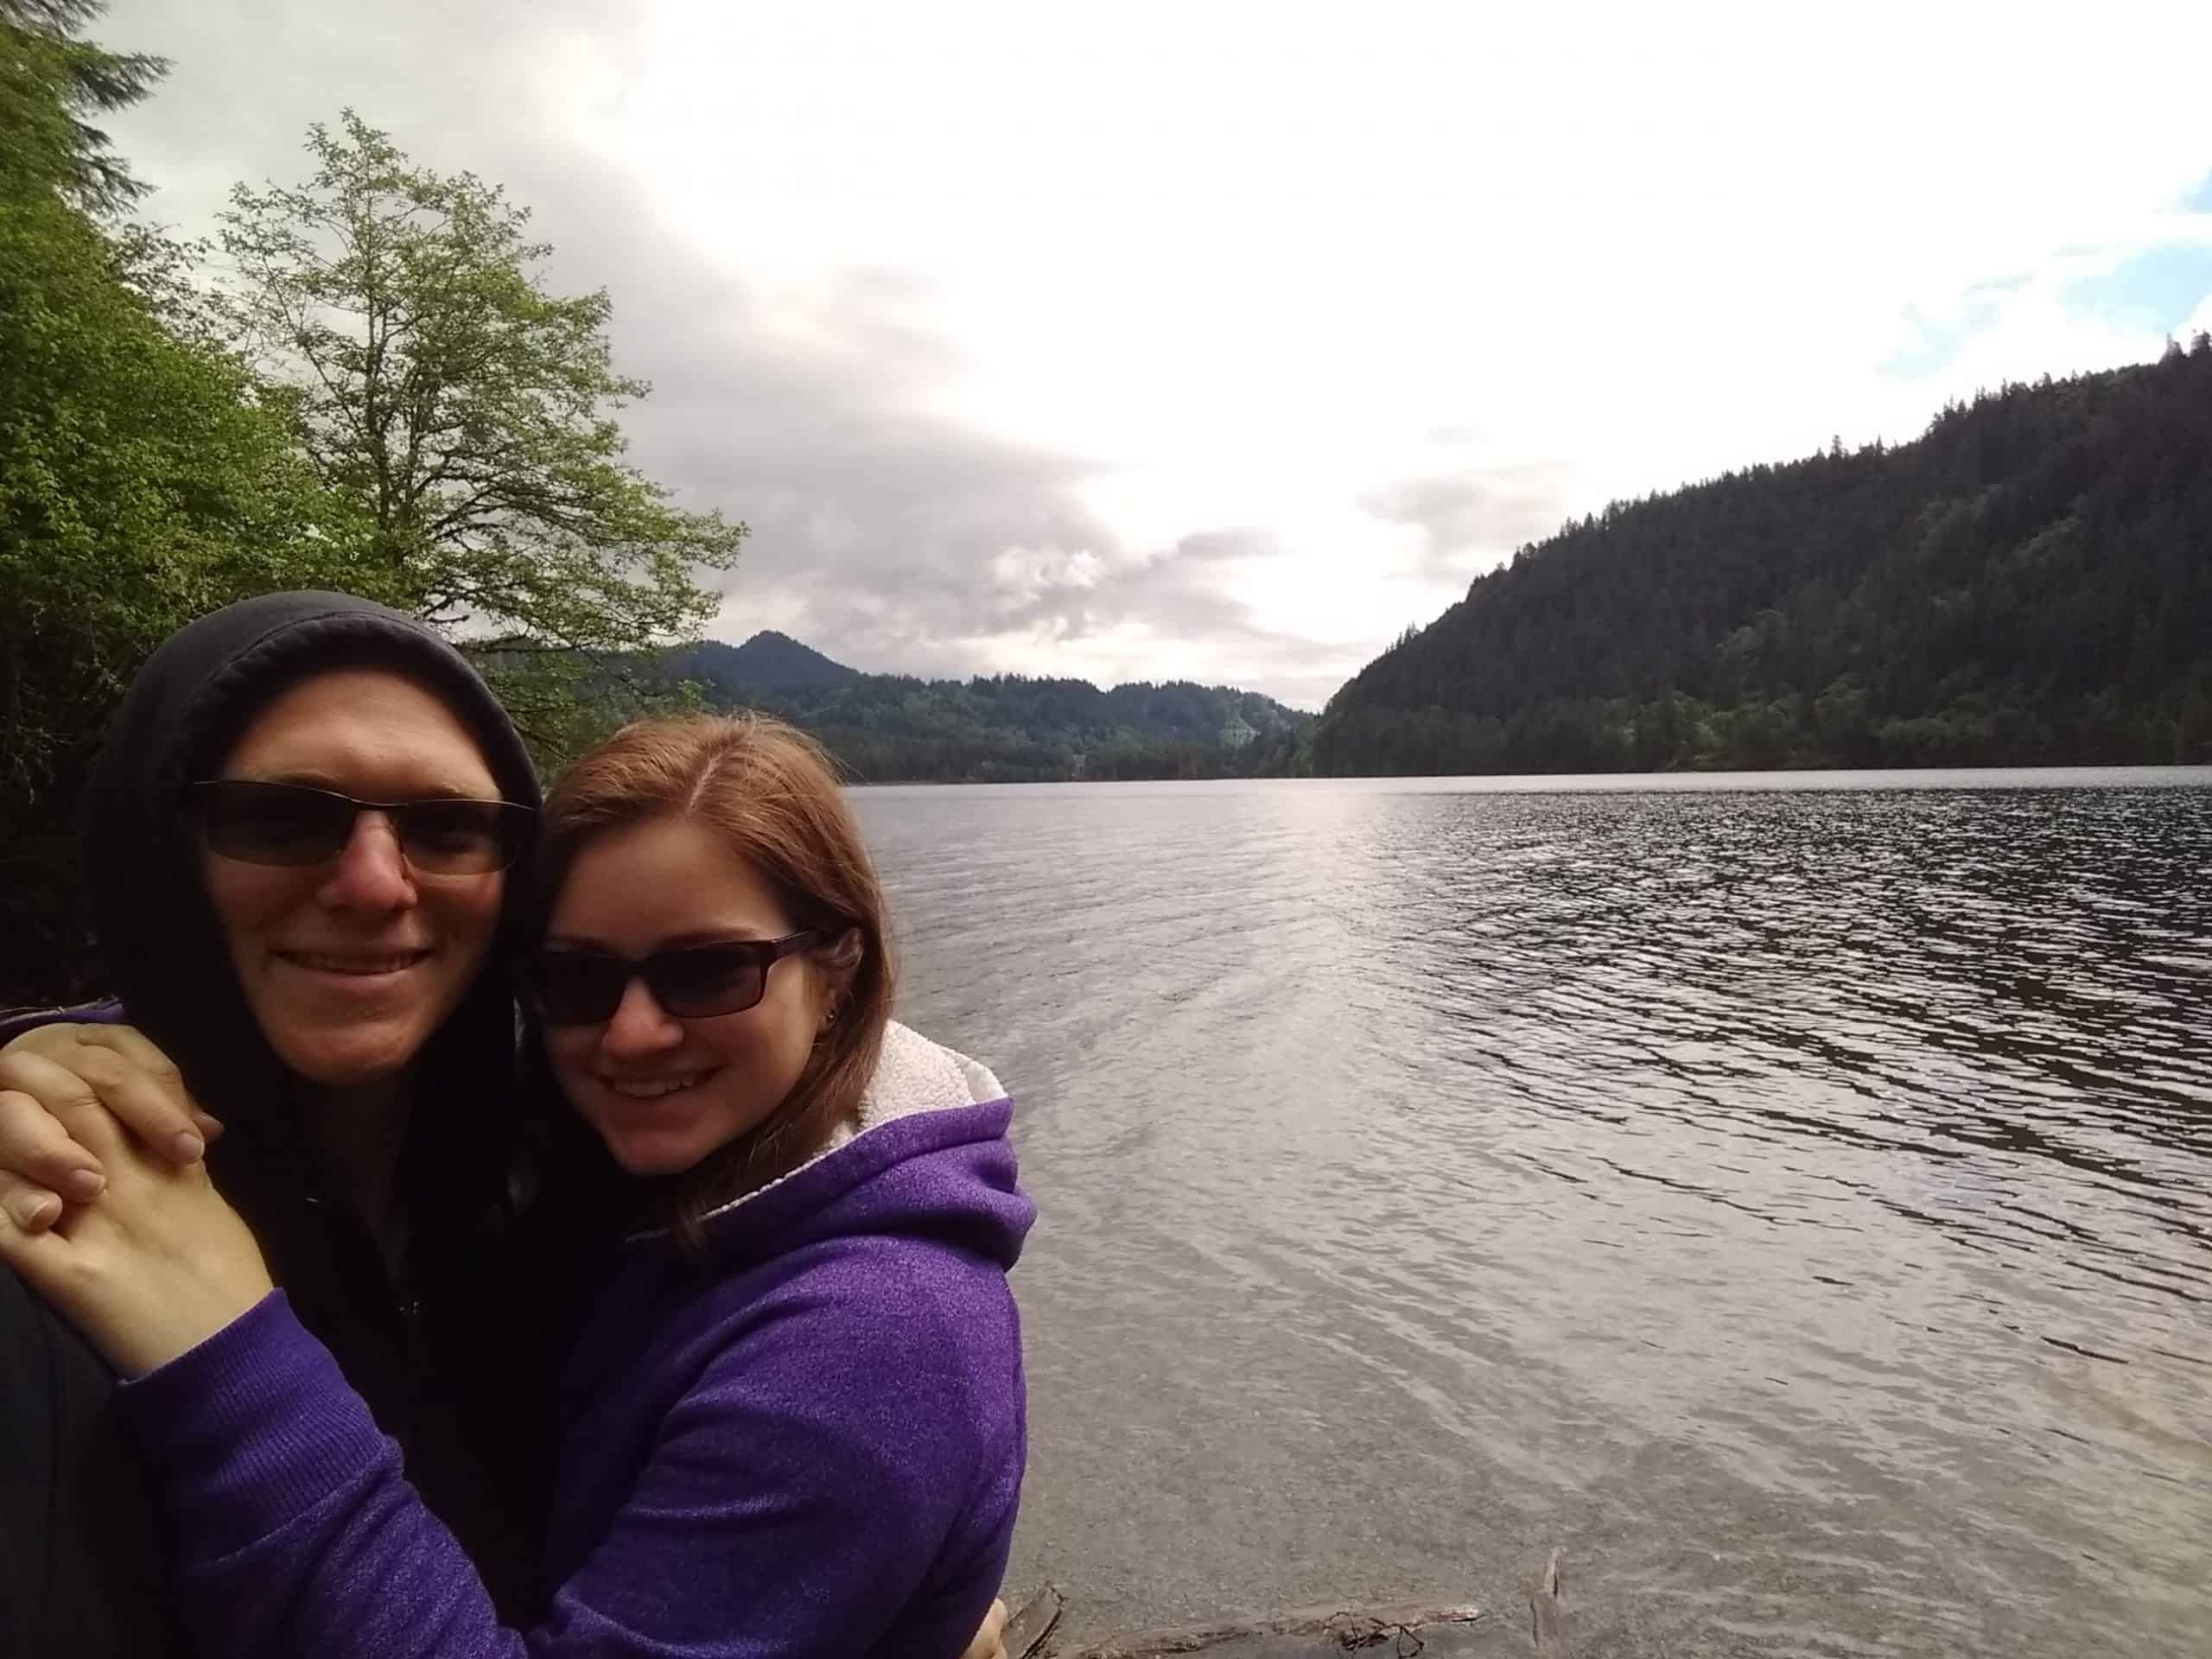 Derek and Kacie at a lake in Washington State